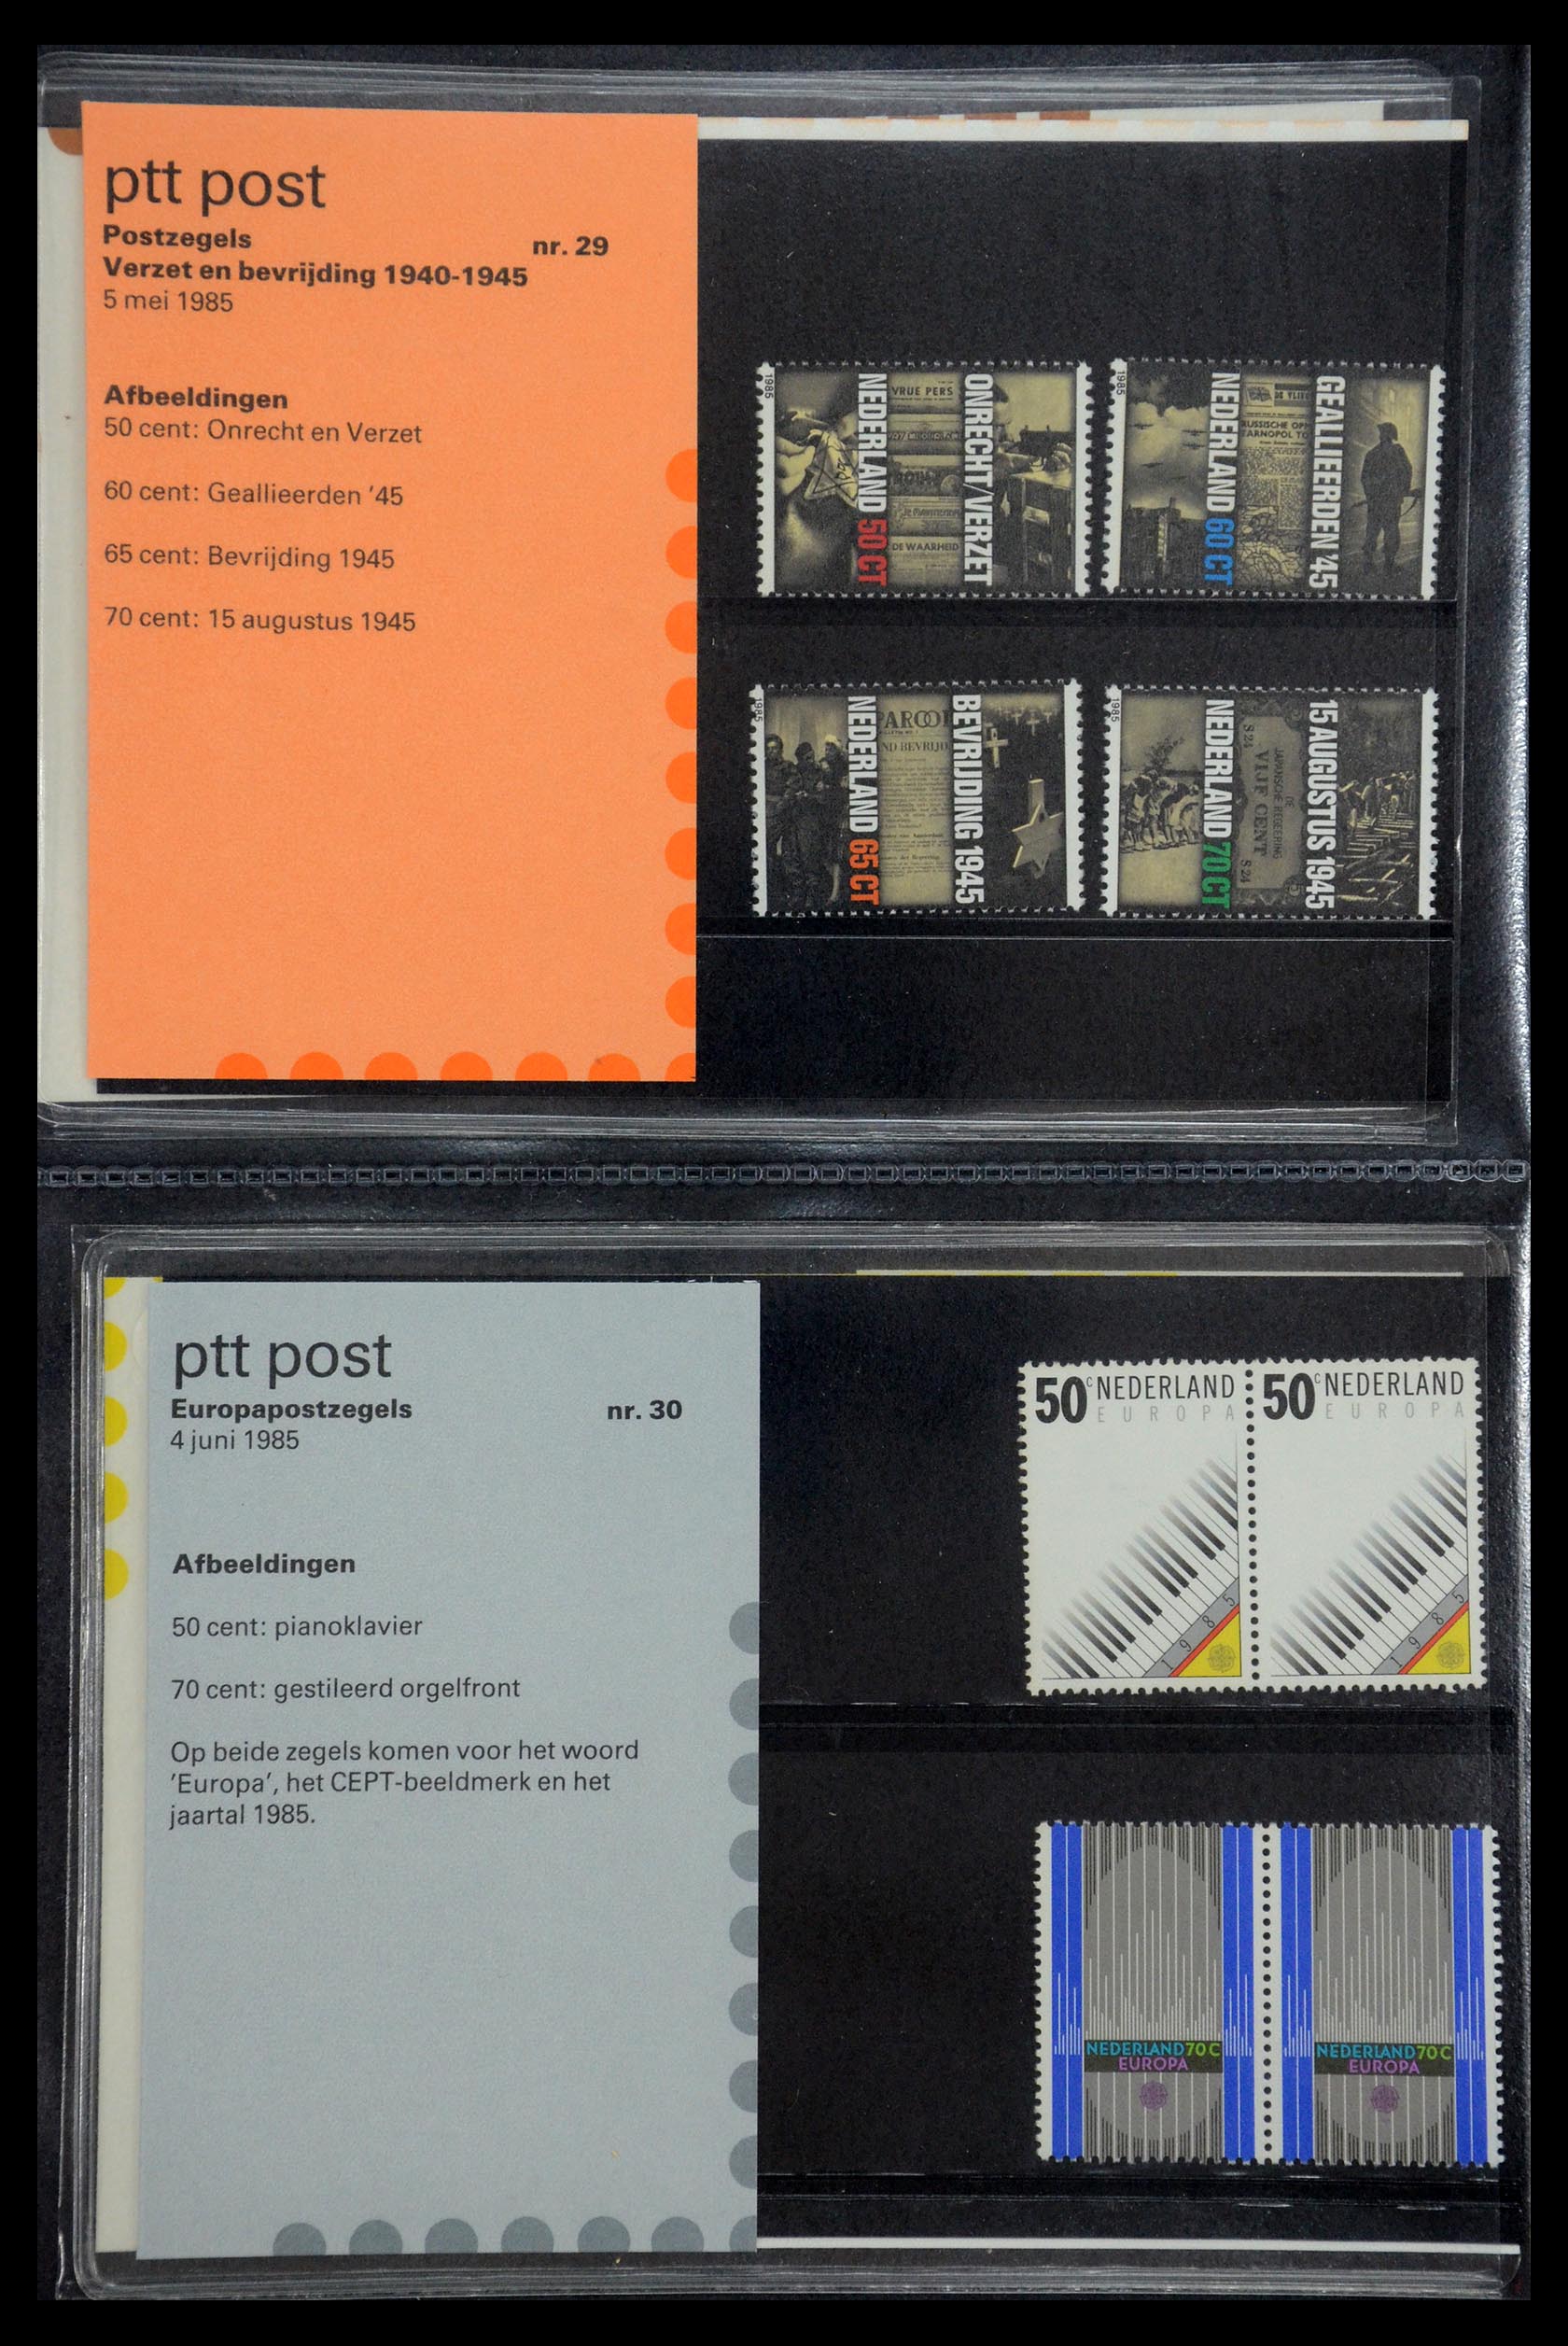 35187 015 - Stamp Collection 35187 Netherlands PTT presentation packs 1982-2019!